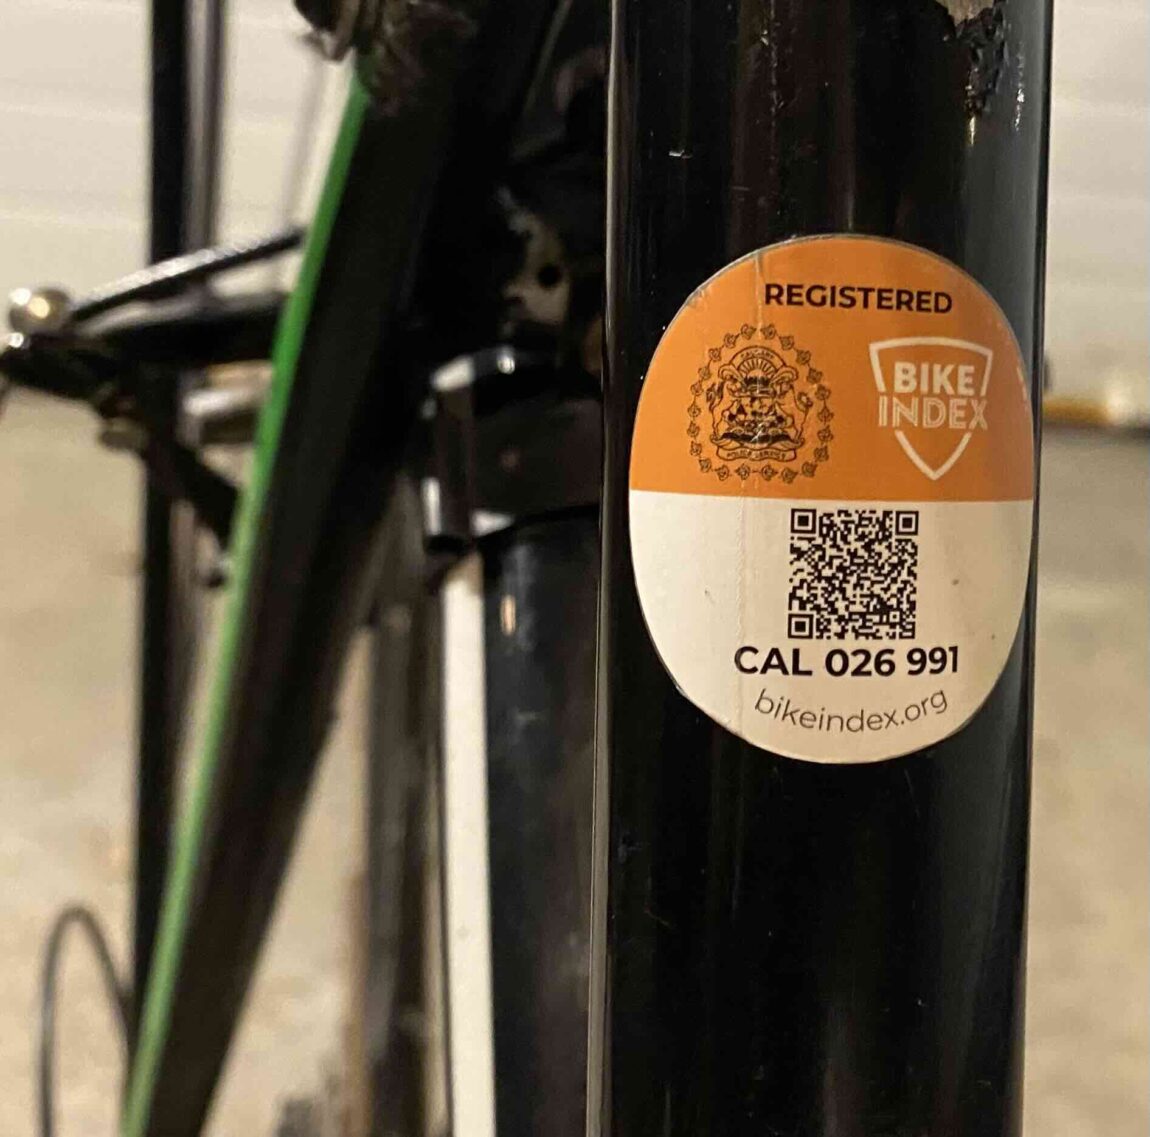 Bike Index sticker